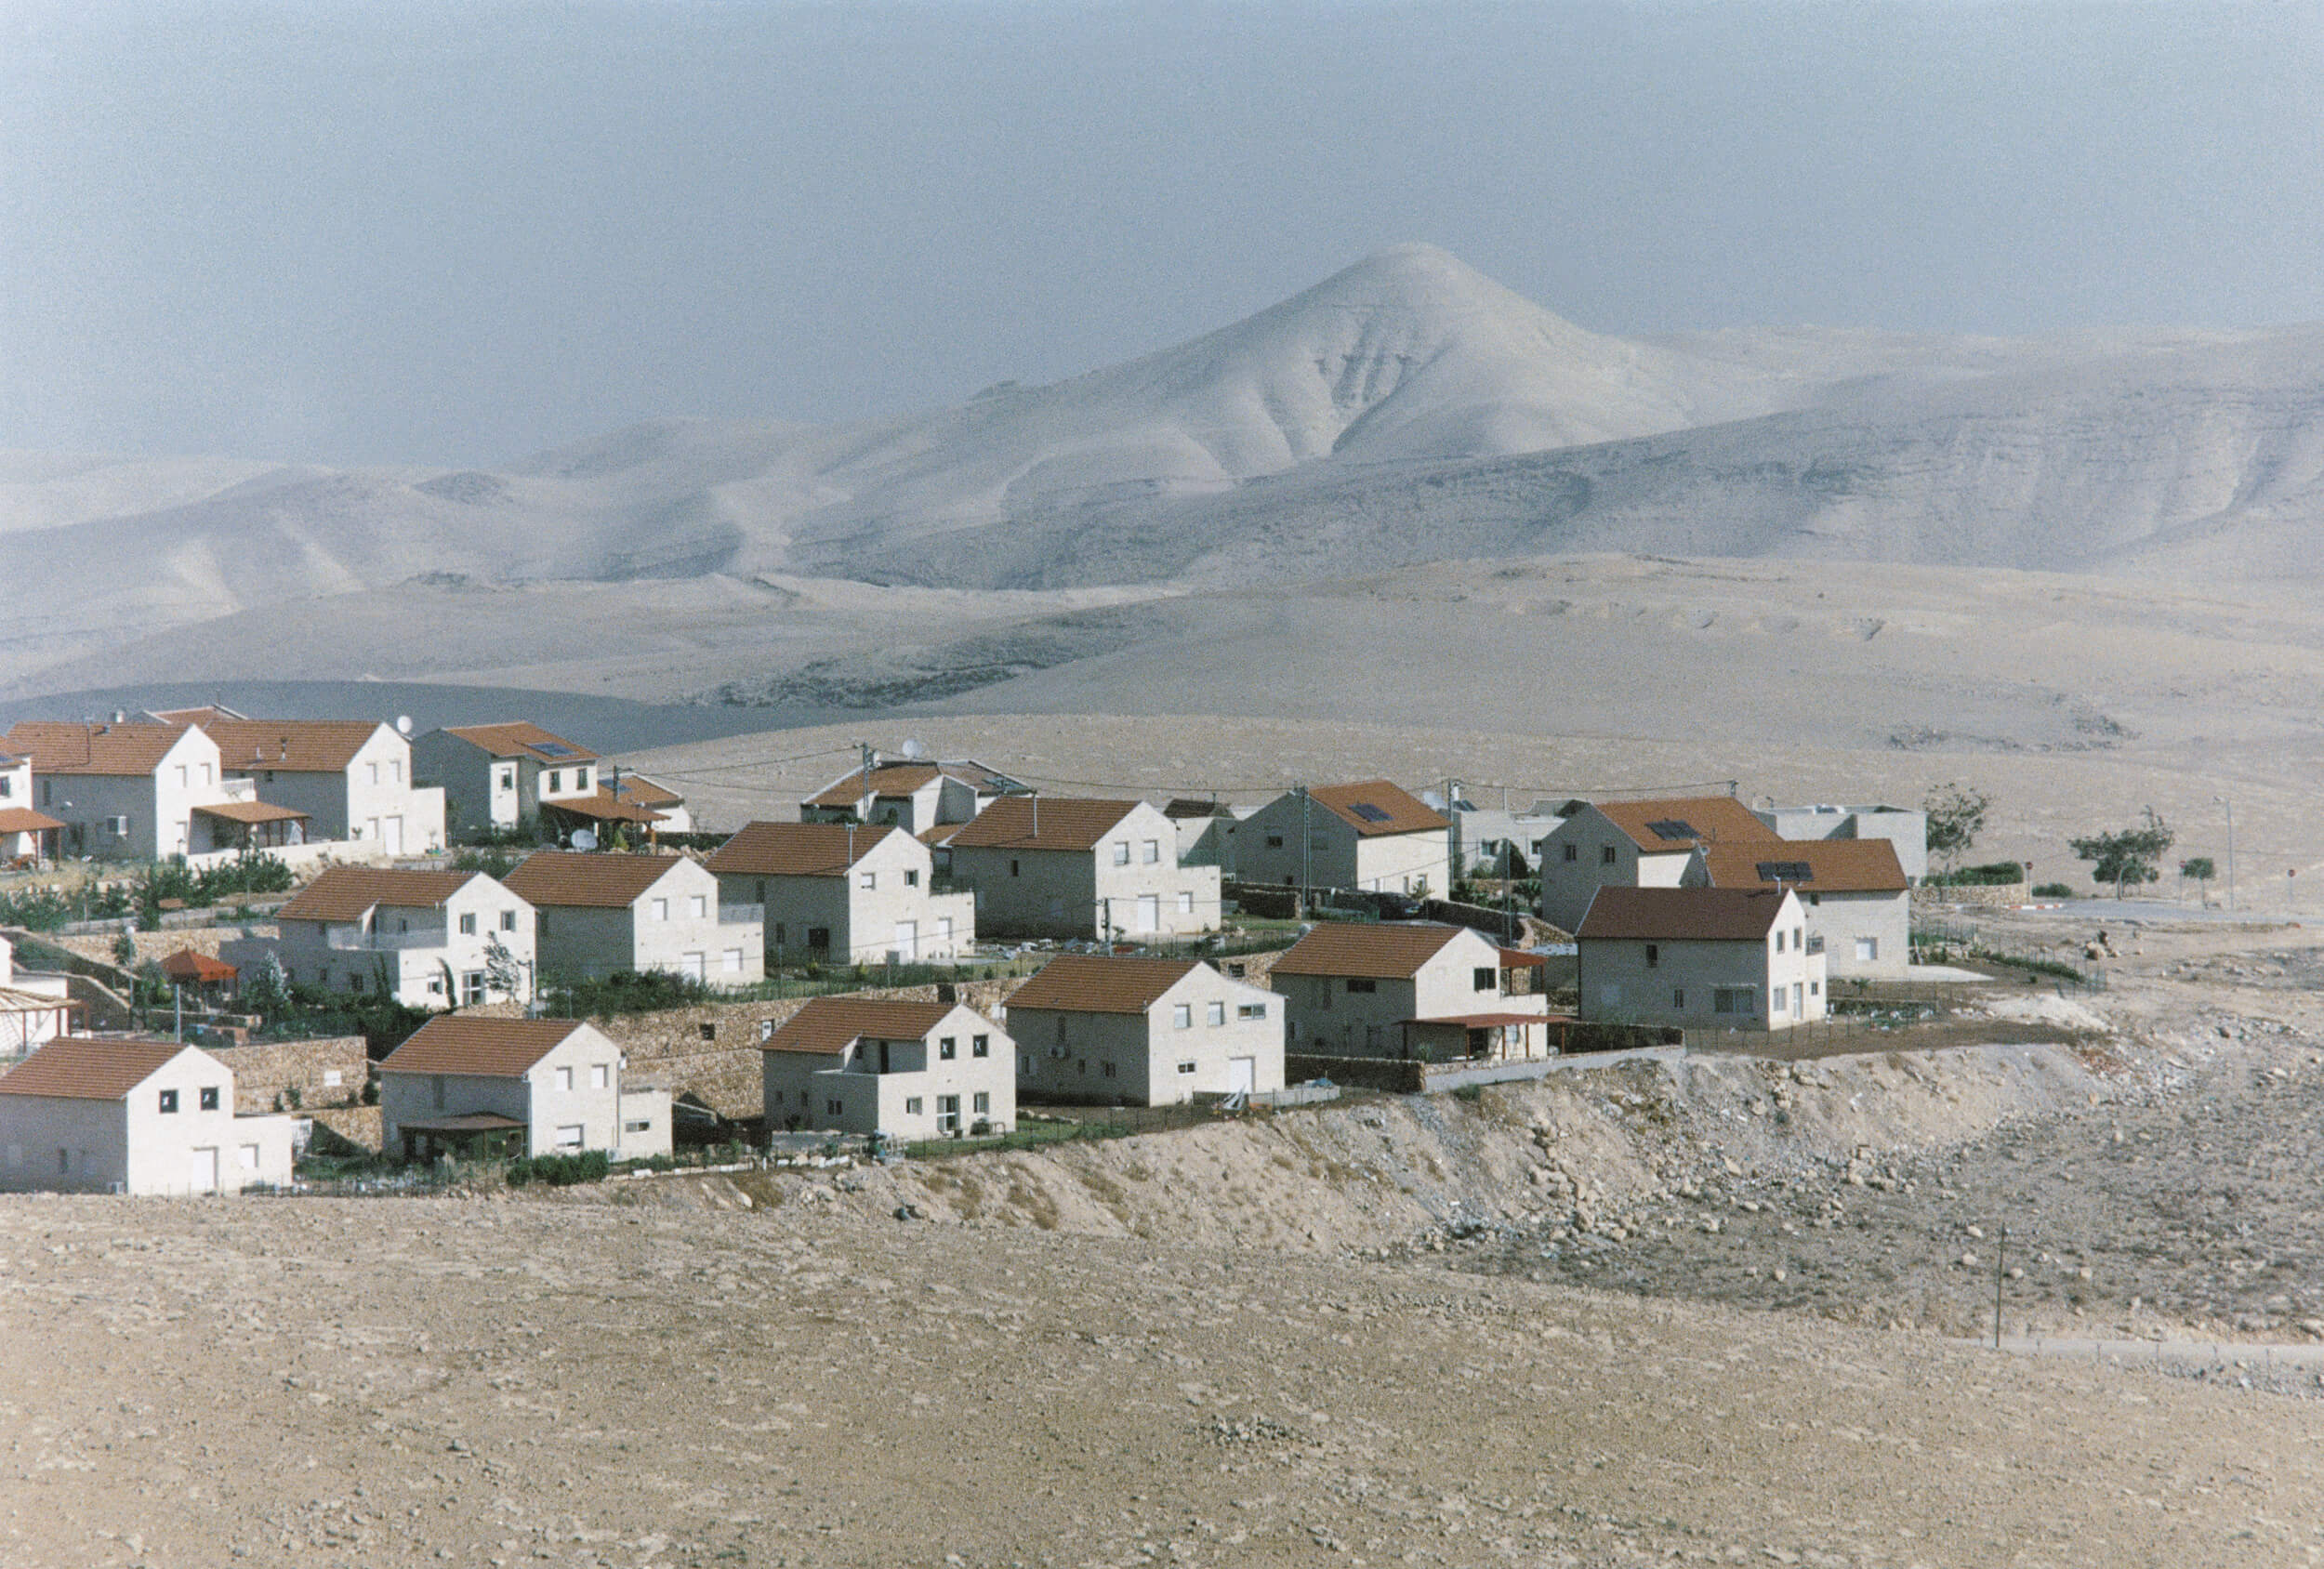  Westbank. The Israeli settlement Kedar 